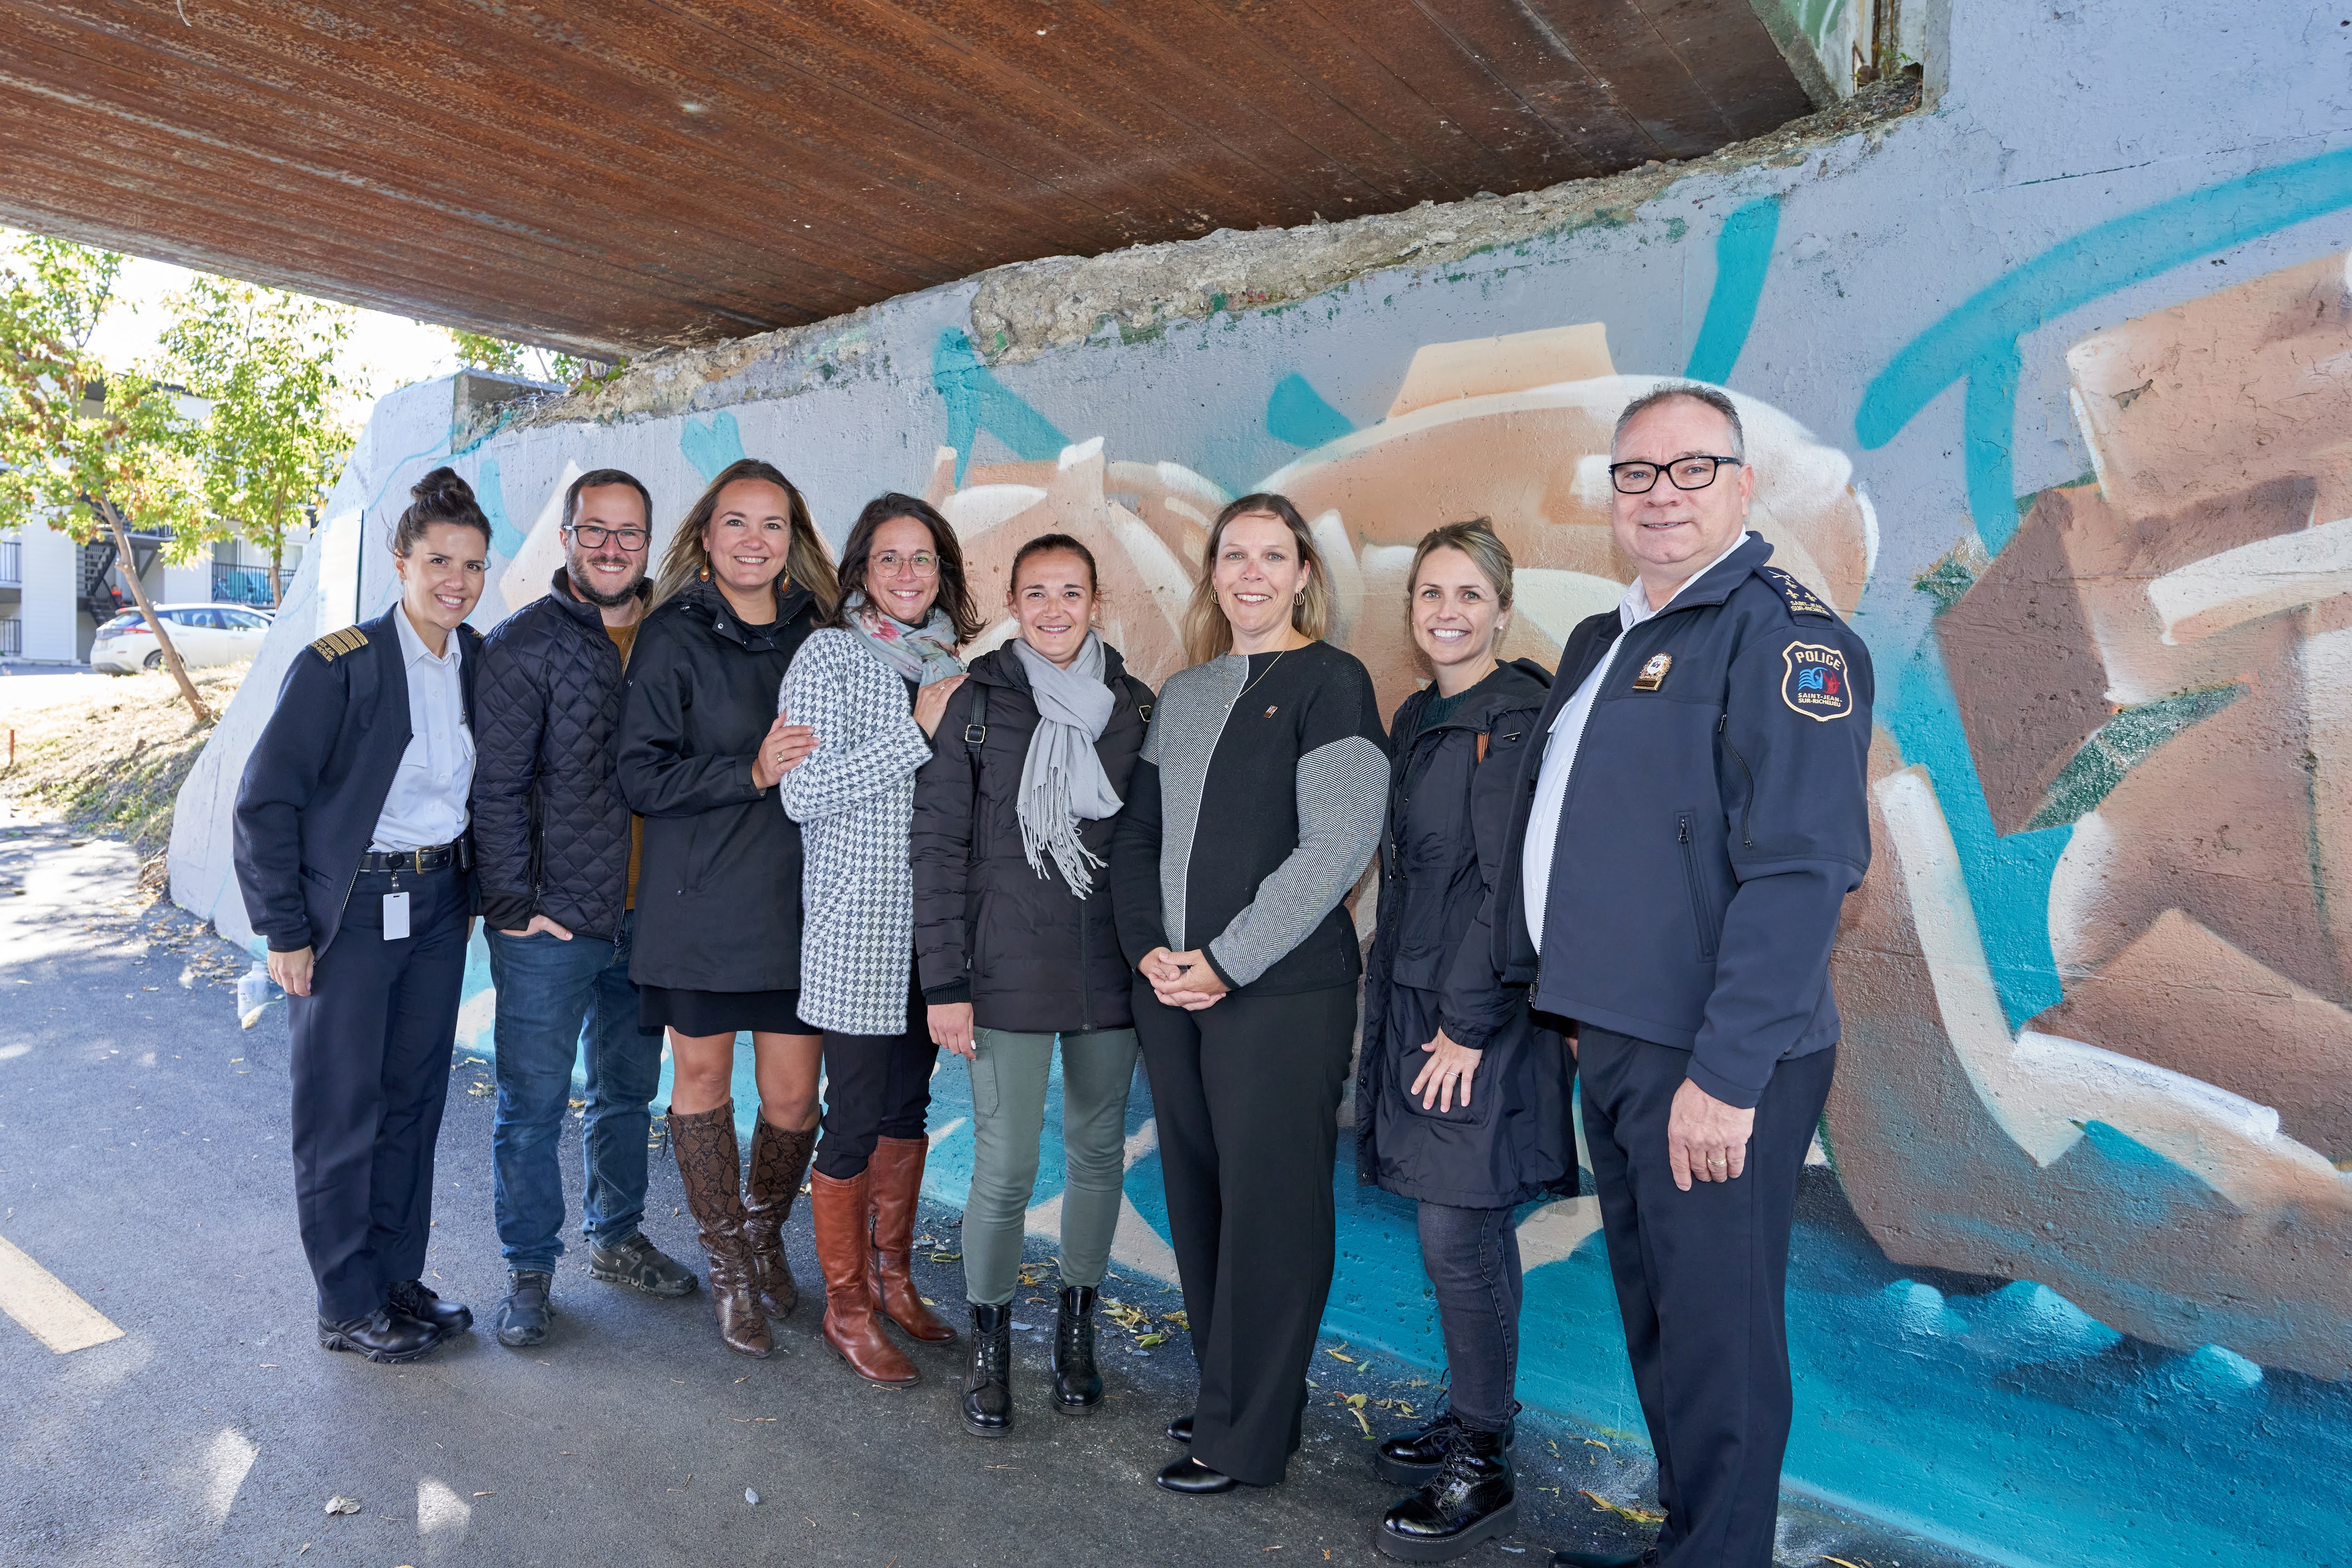 Inauguration du 2e mur légal pour graffiteurs - 2 oct 2022